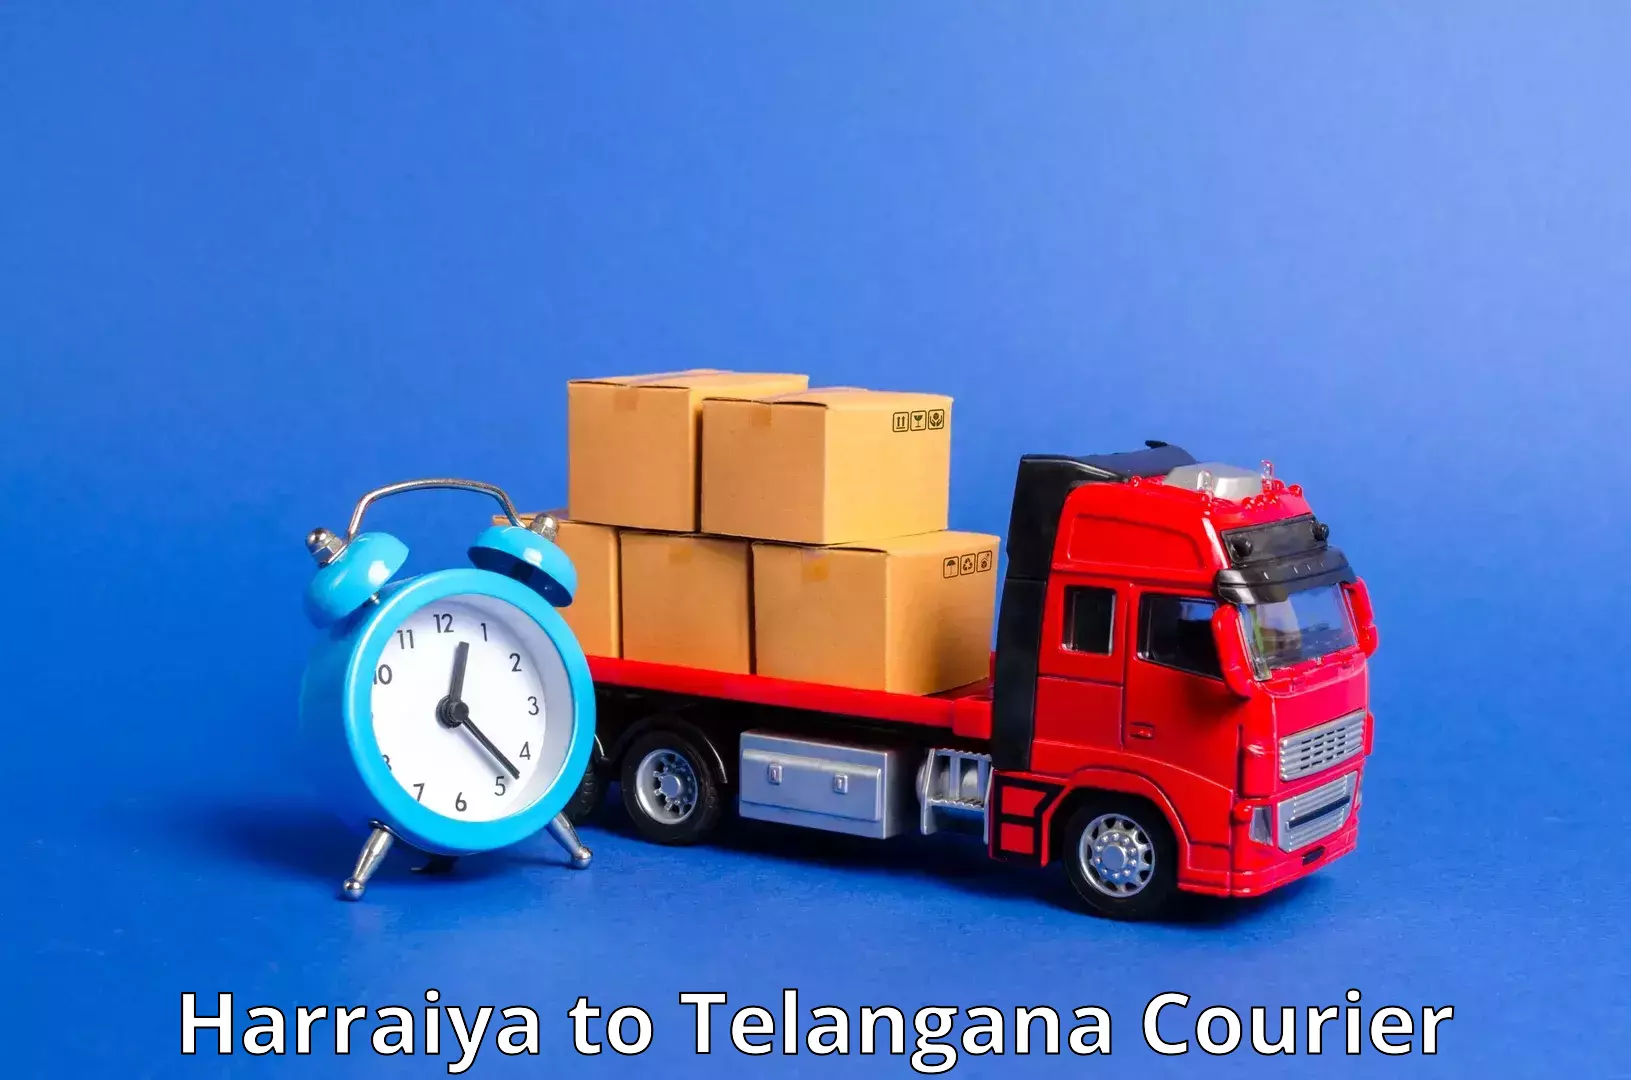 Next-generation courier services in Harraiya to Cherla